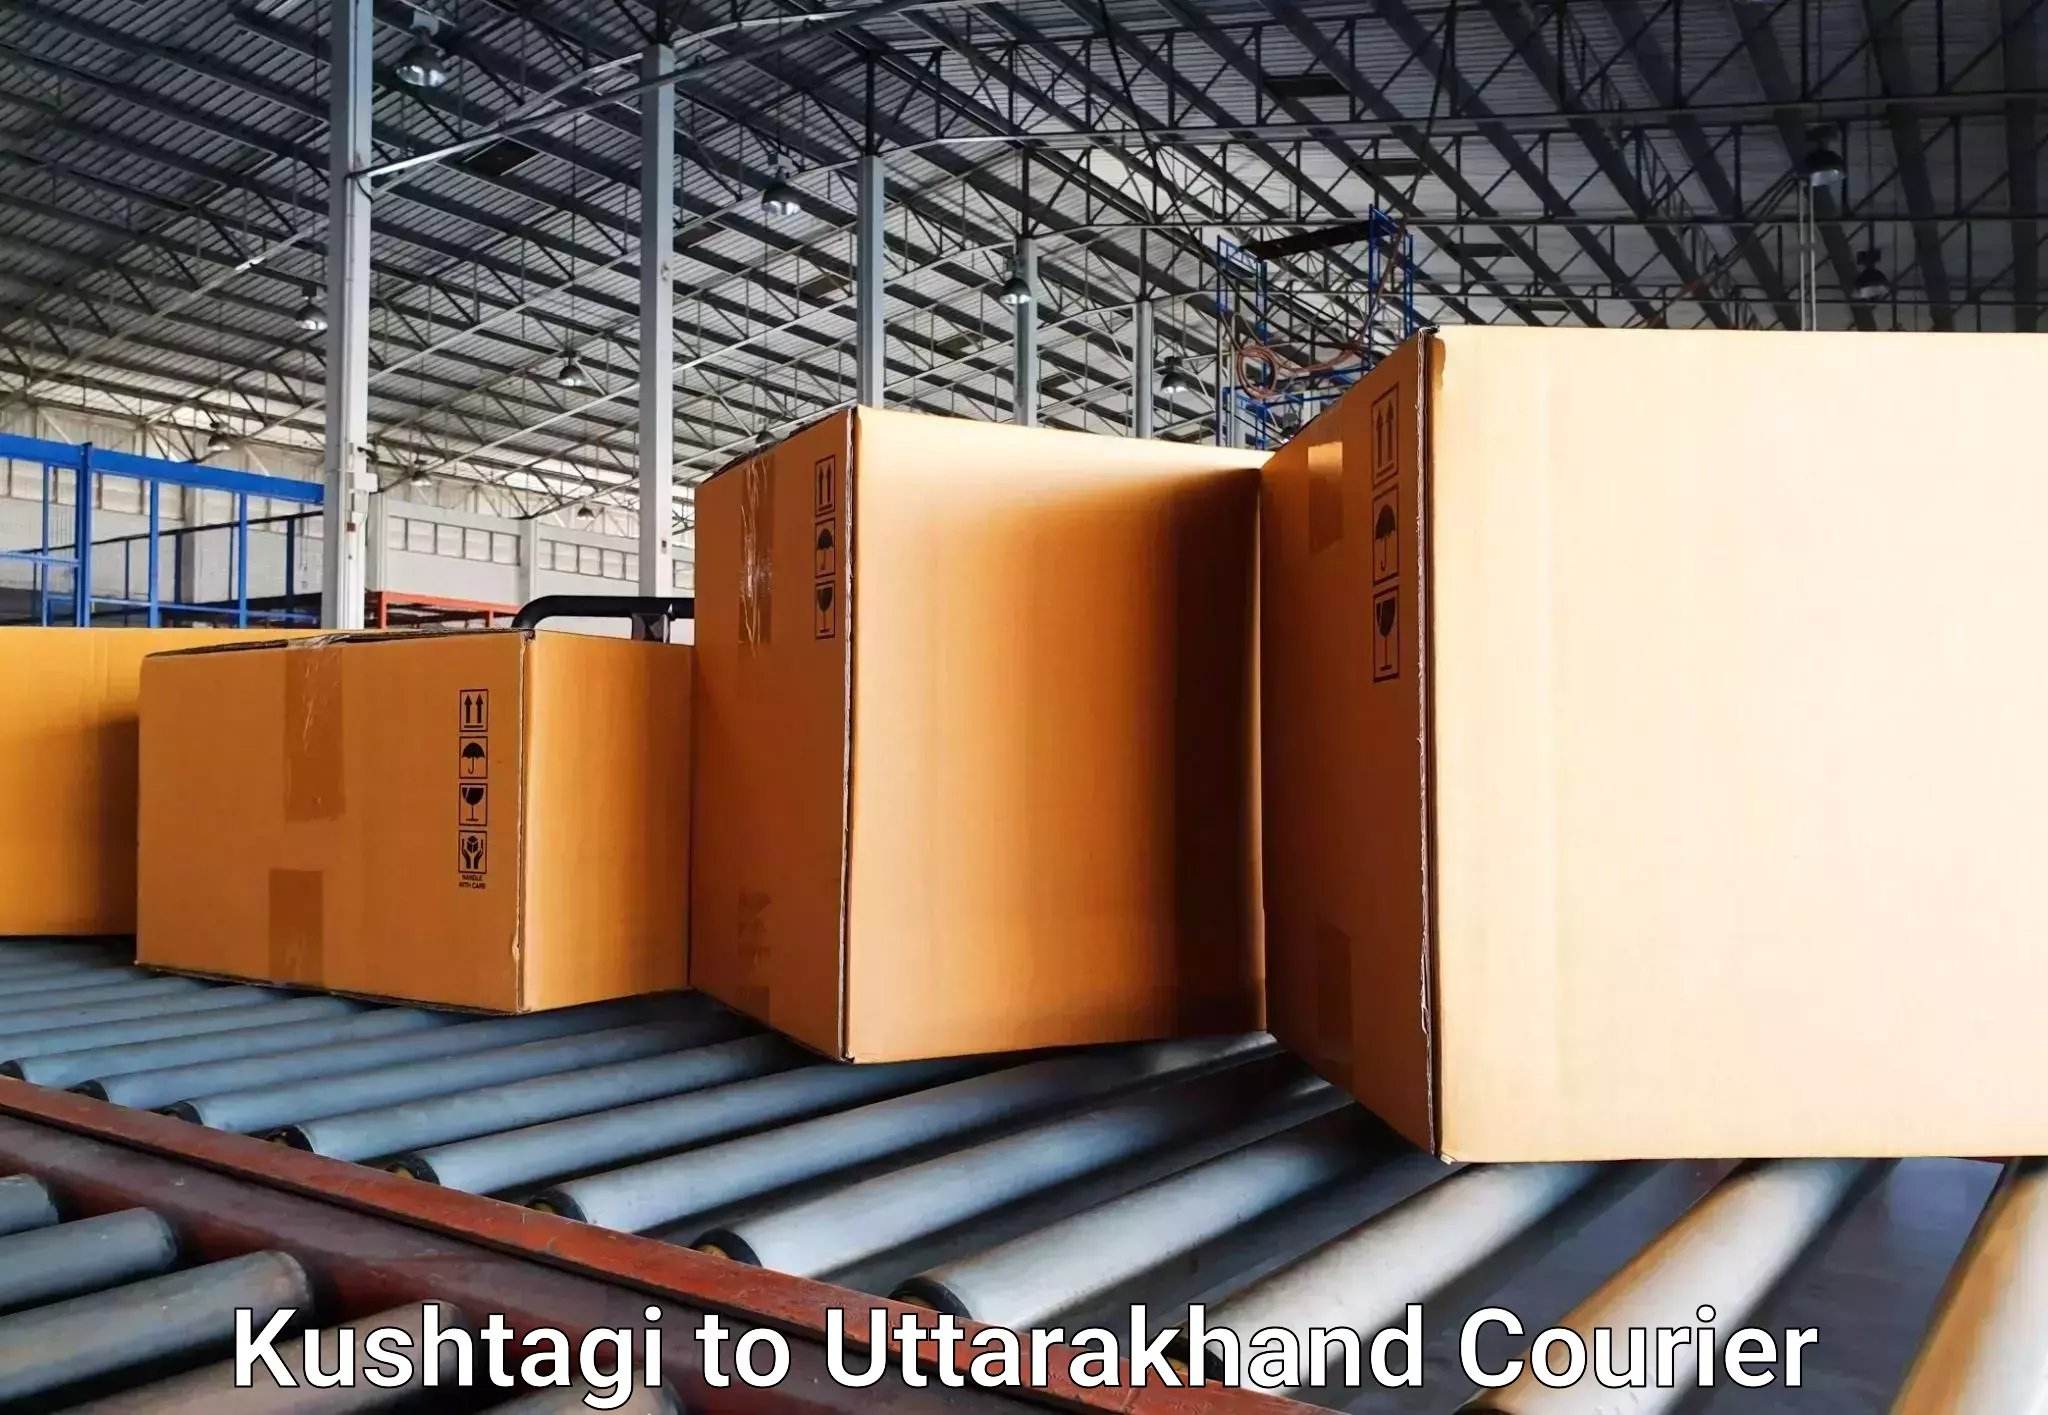 Baggage transport network Kushtagi to Uttarakhand